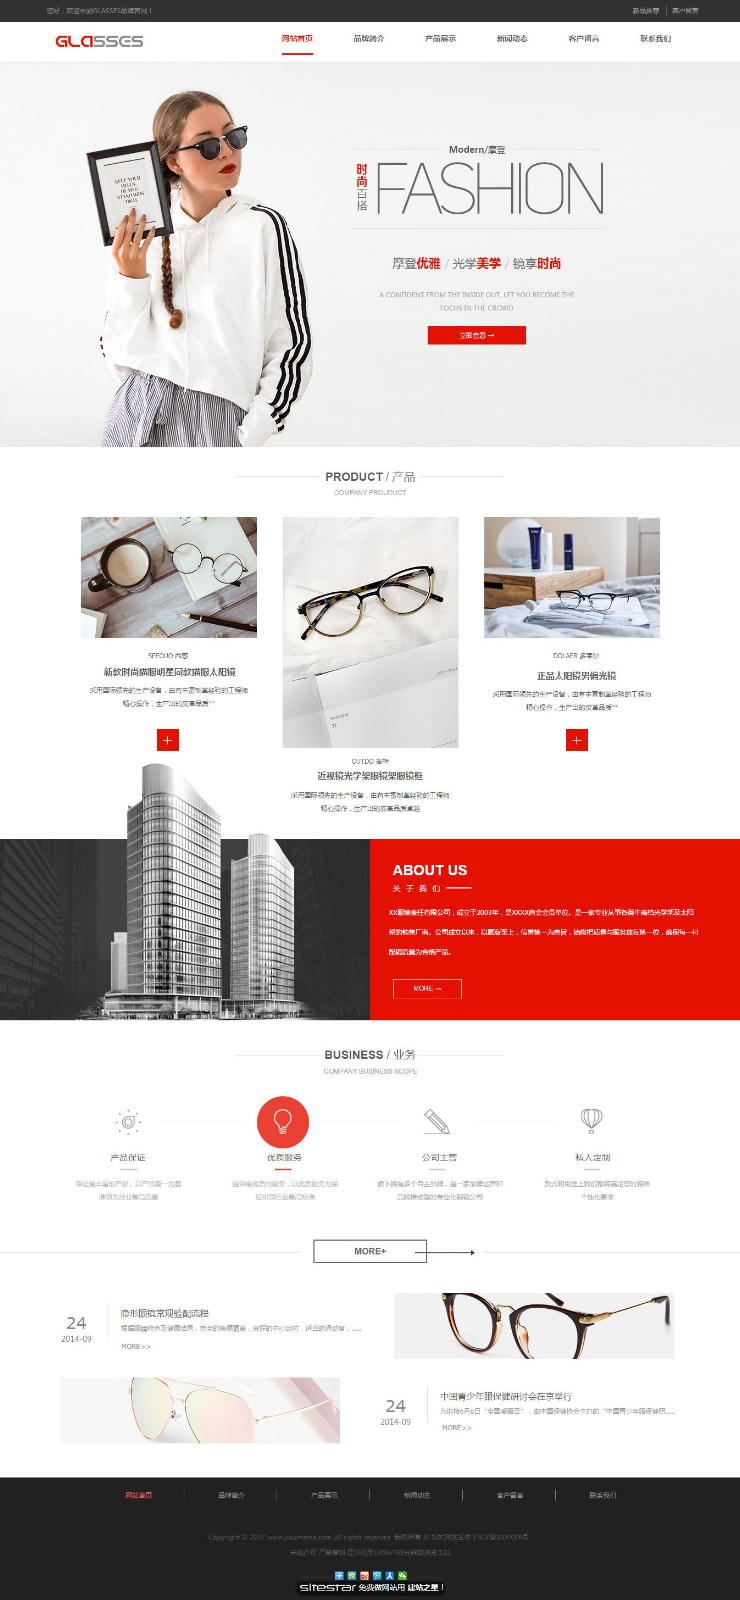 企业网站精美模板-glasses-1037161